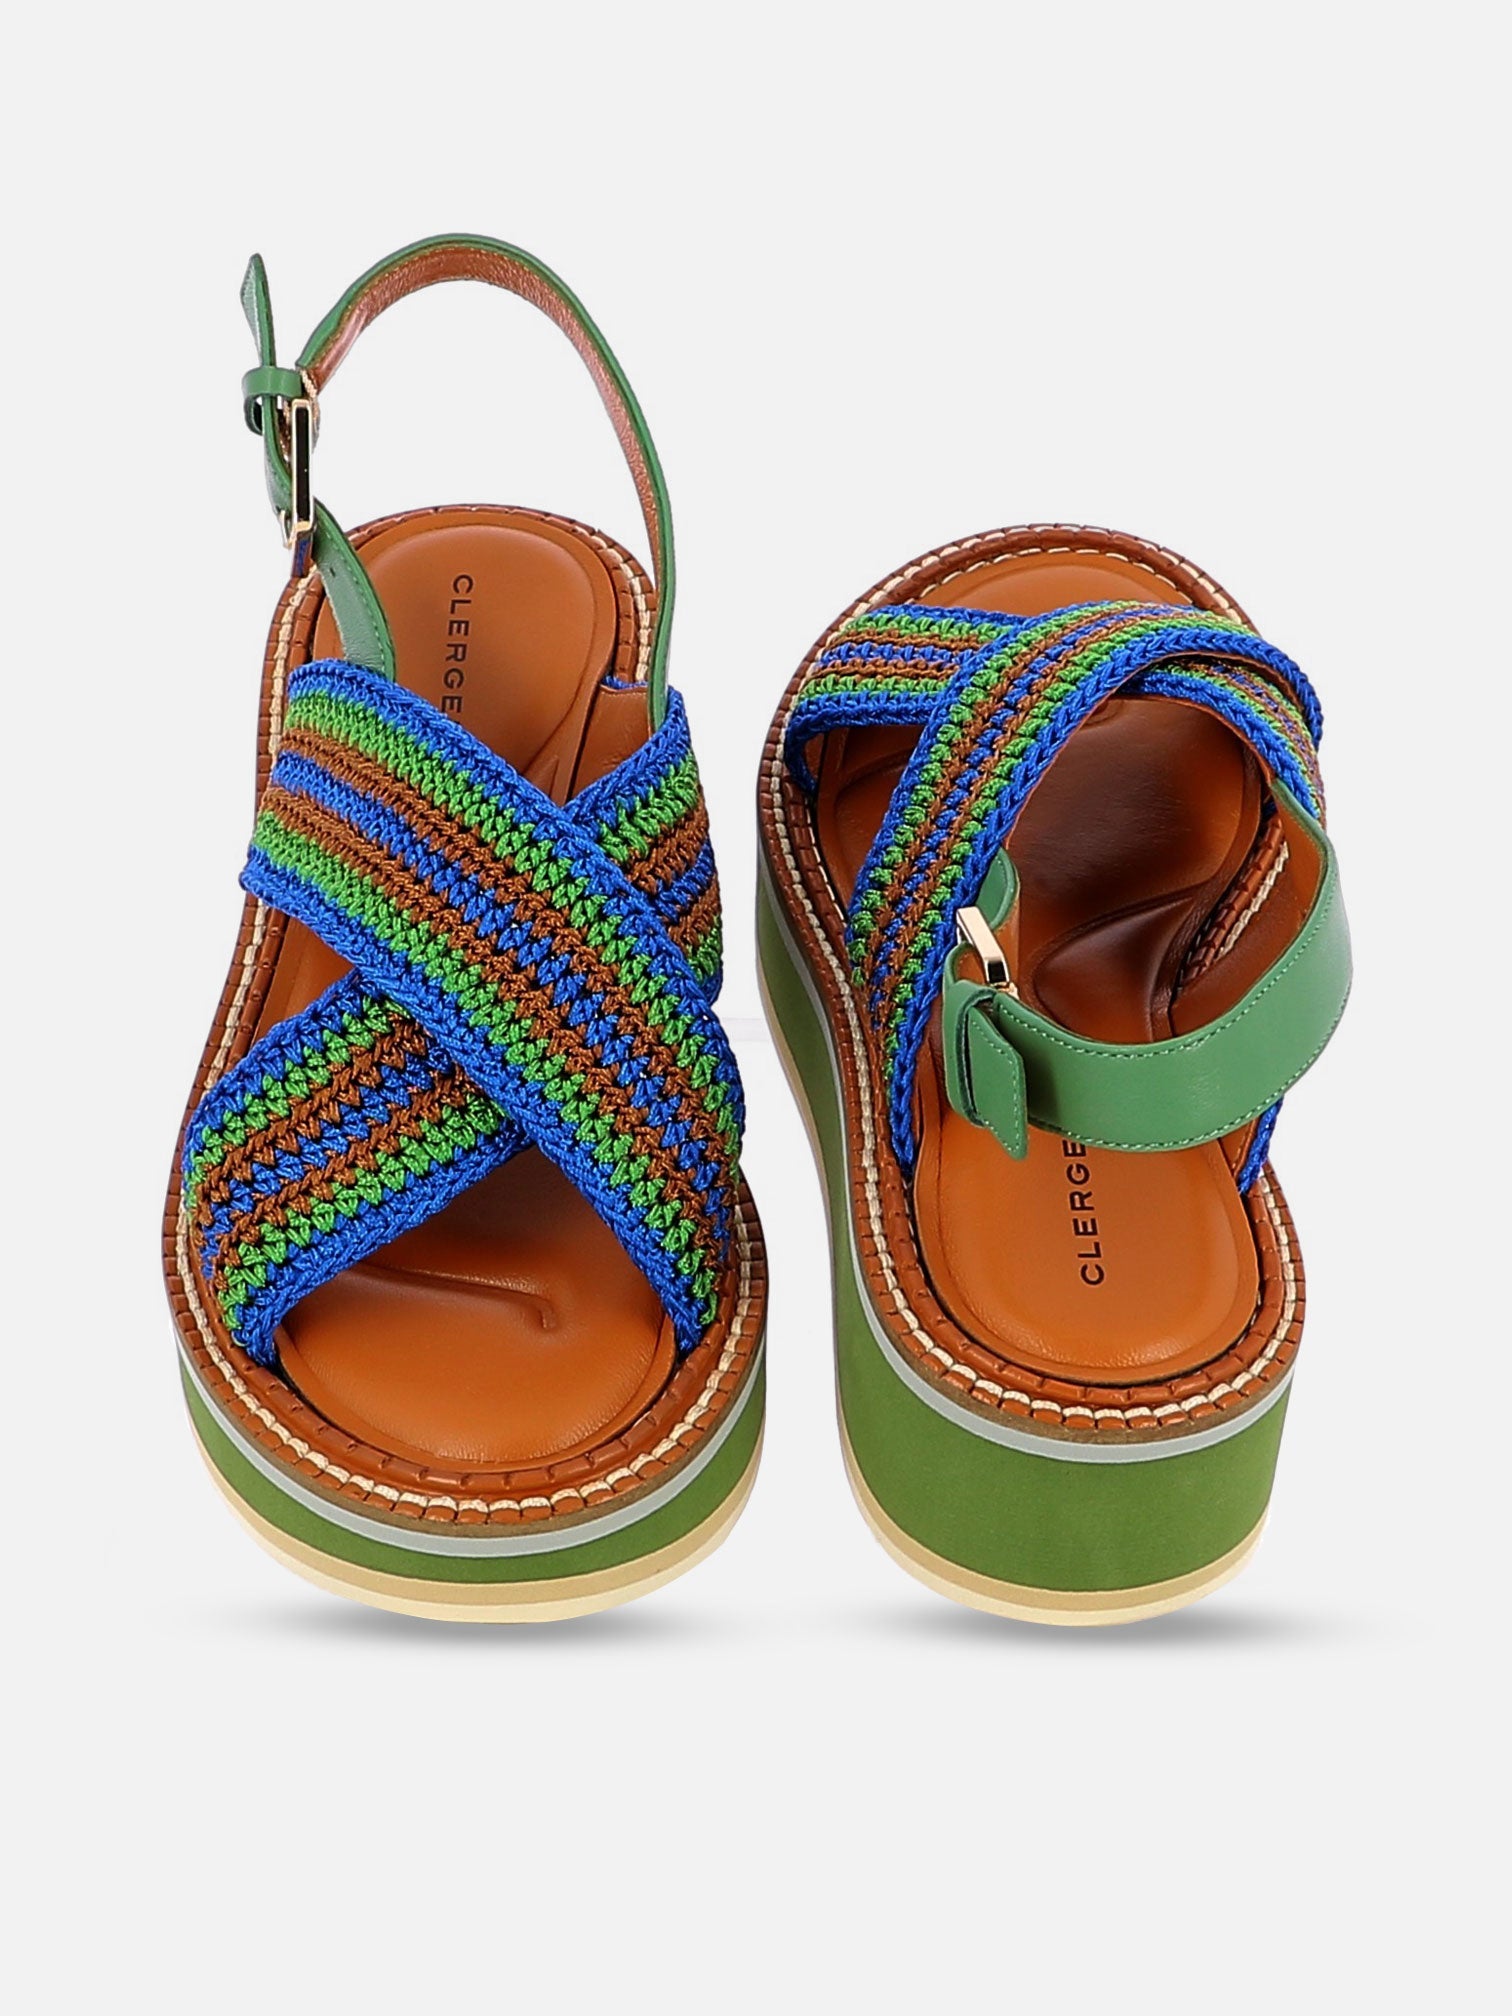 SANDALS - FADEN sandals, nil crochet - 3606063965699 - Clergerie Paris - Europe